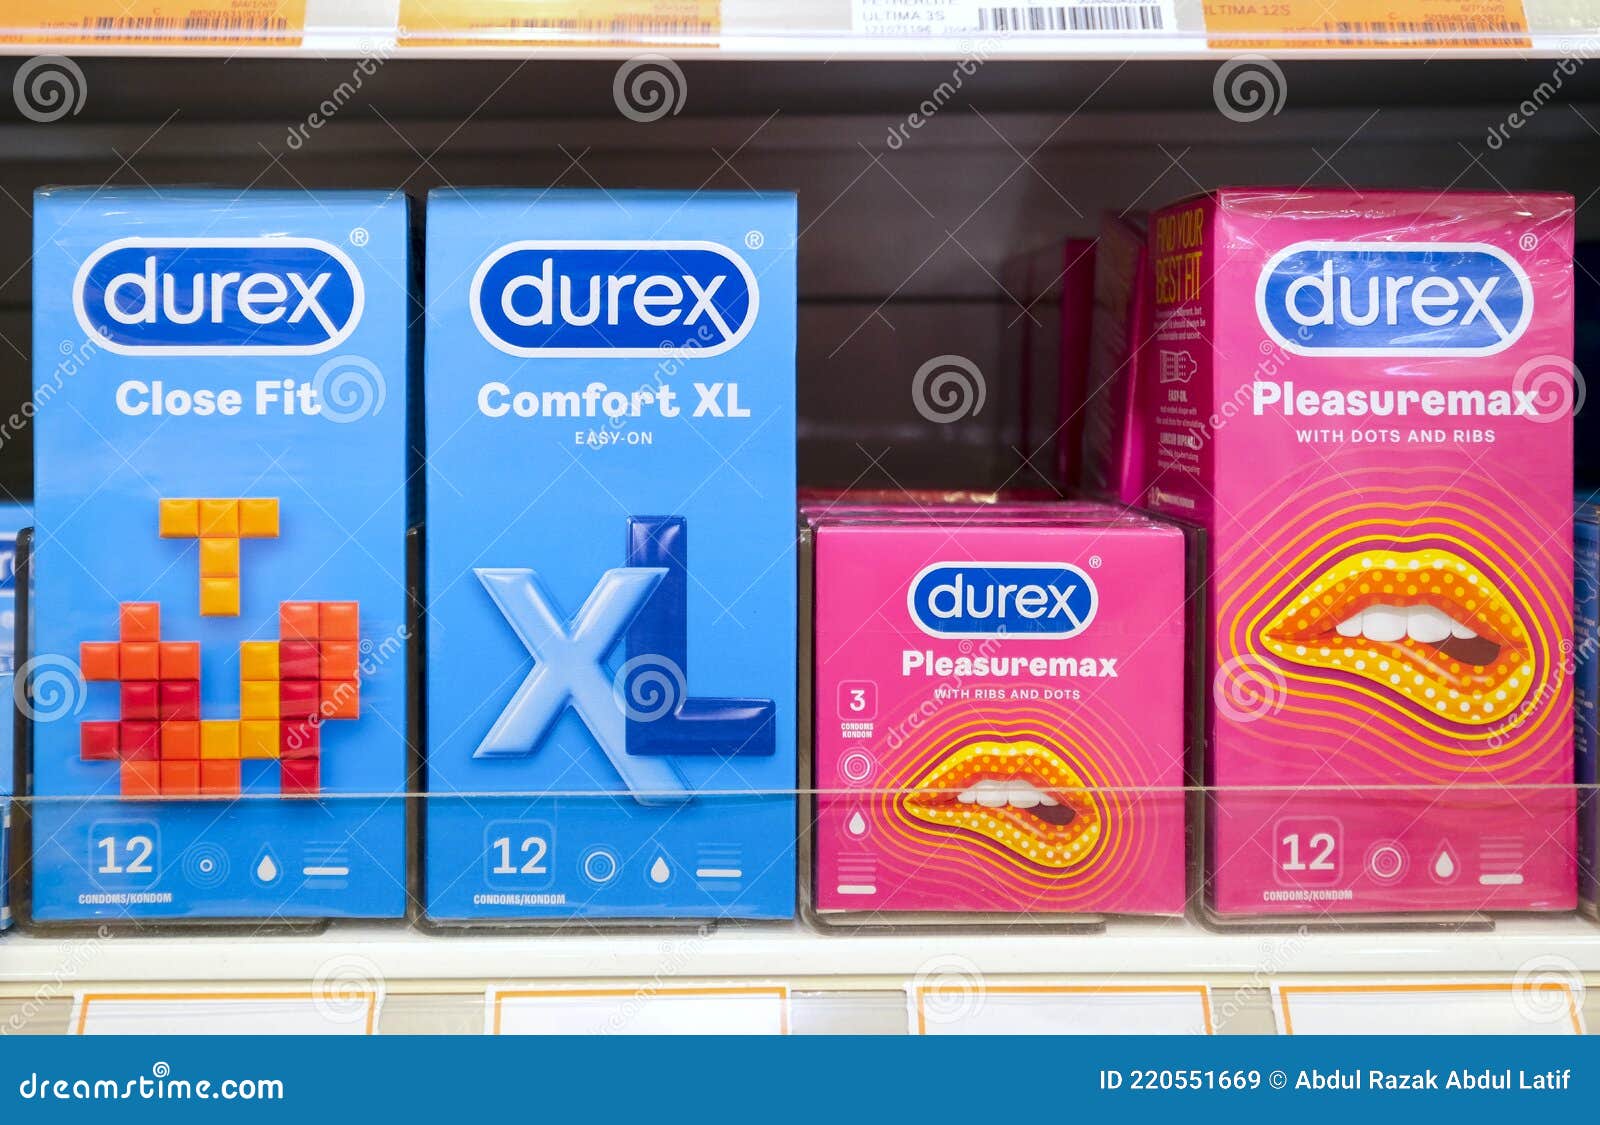 Durex condoms material